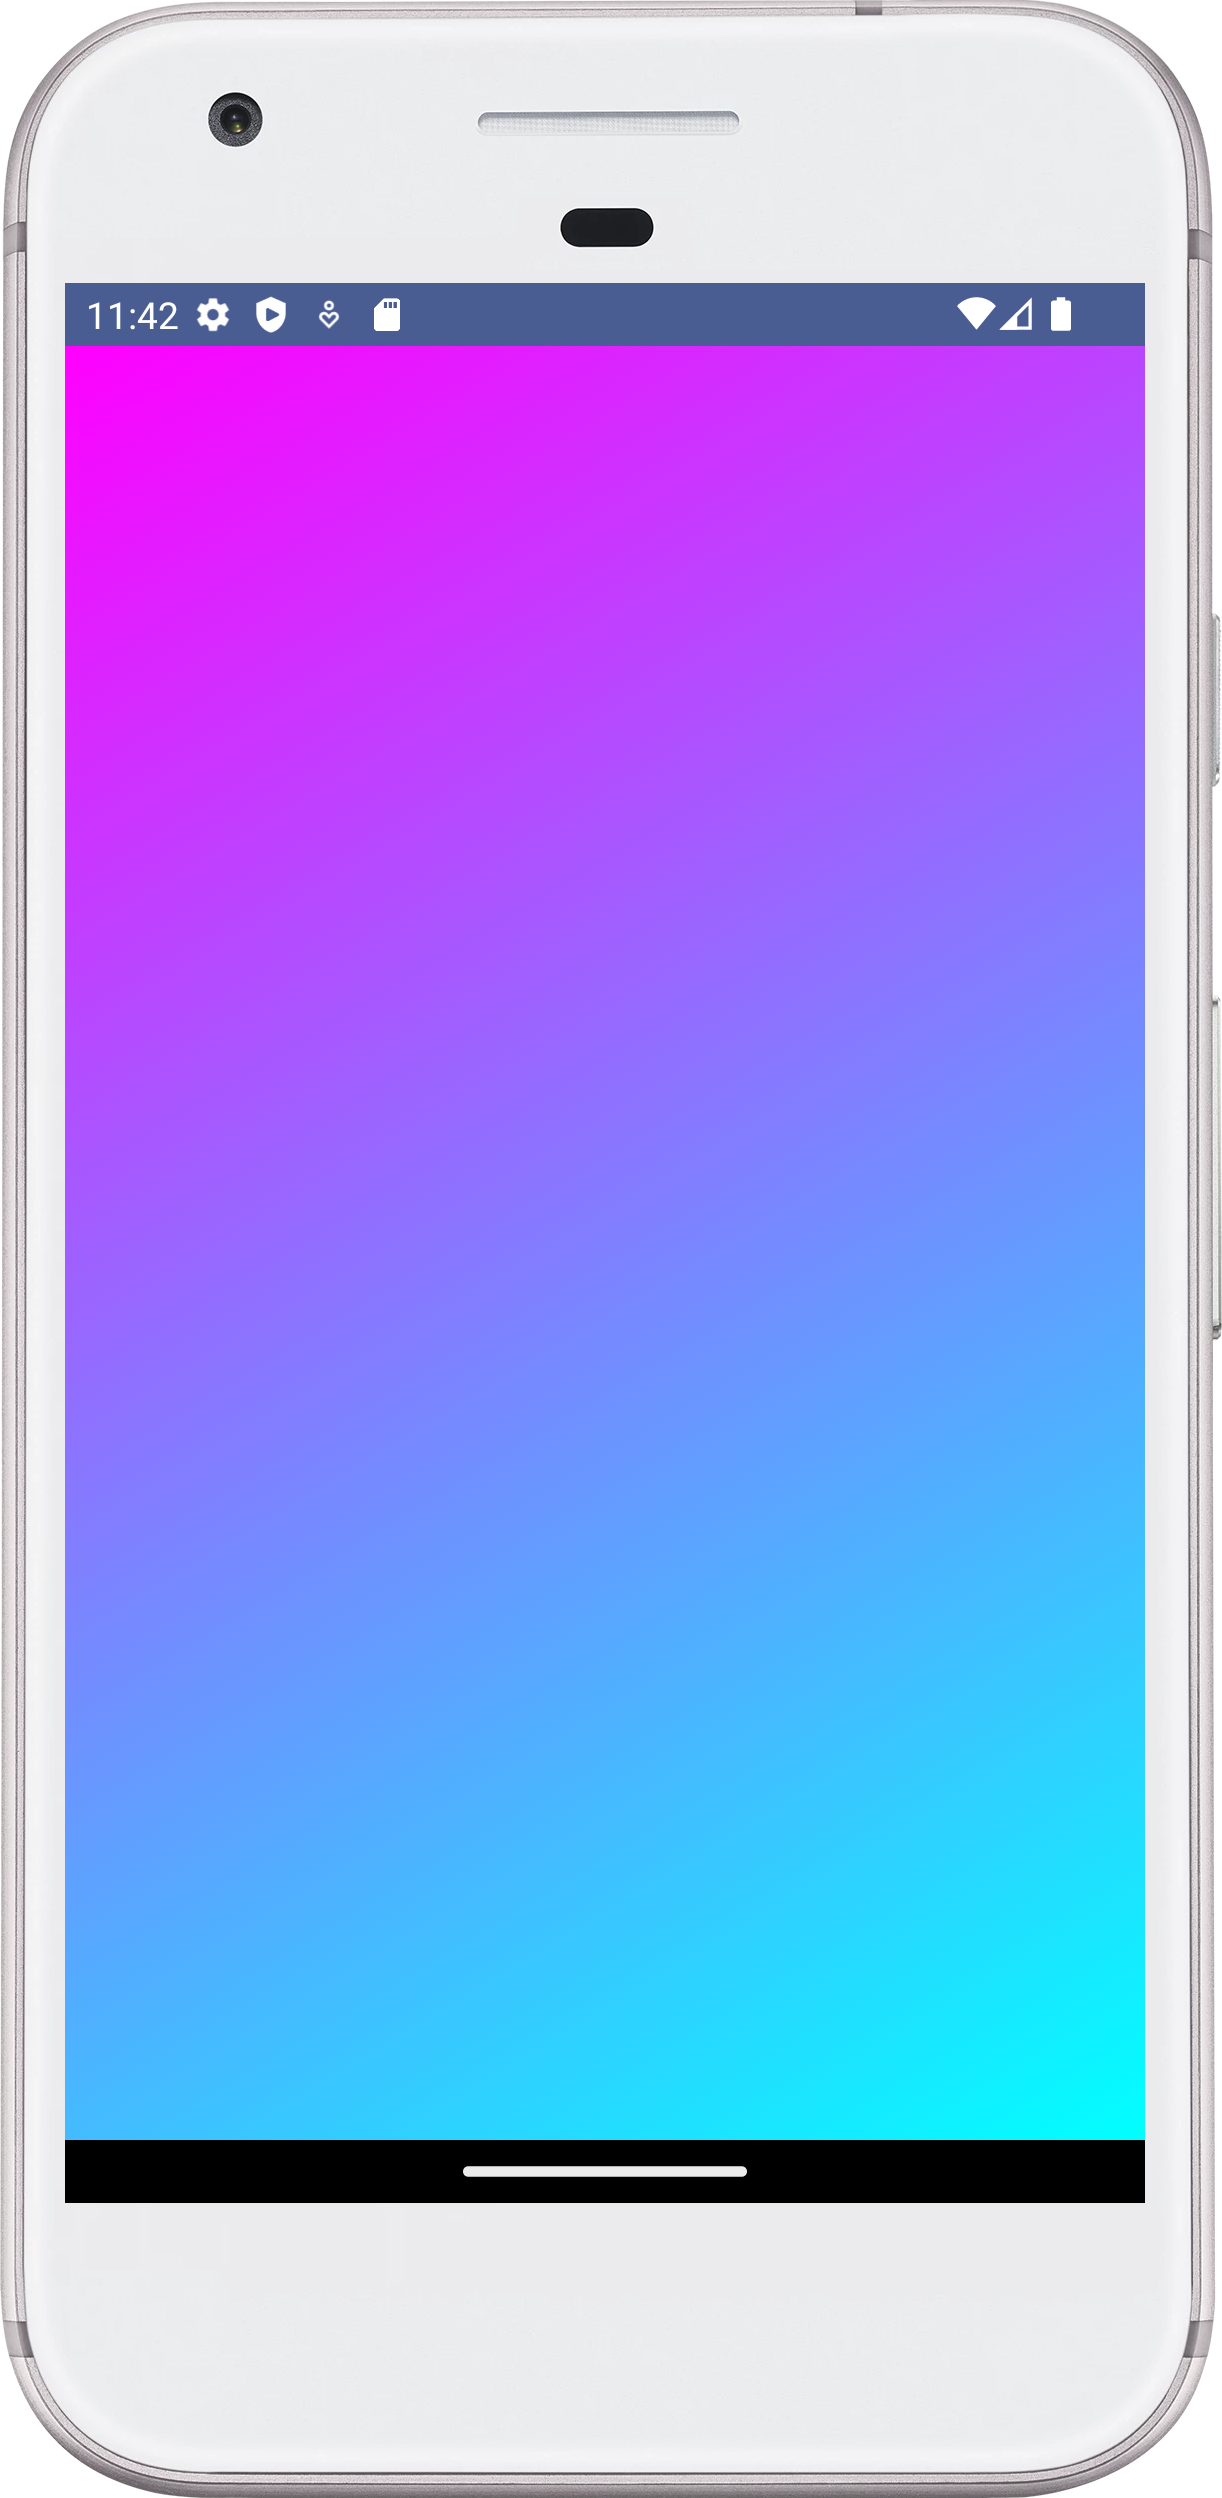 Android Jetpack Compose - Gradient Background: Hãy khám phá hình ảnh về Android Jetpack Compose - Gradient Background để trải nghiệm cách sử dụng tính năng mới này và thưởng thức vẻ đẹp của hình ảnh được tạo ra bởi Gradient Background.